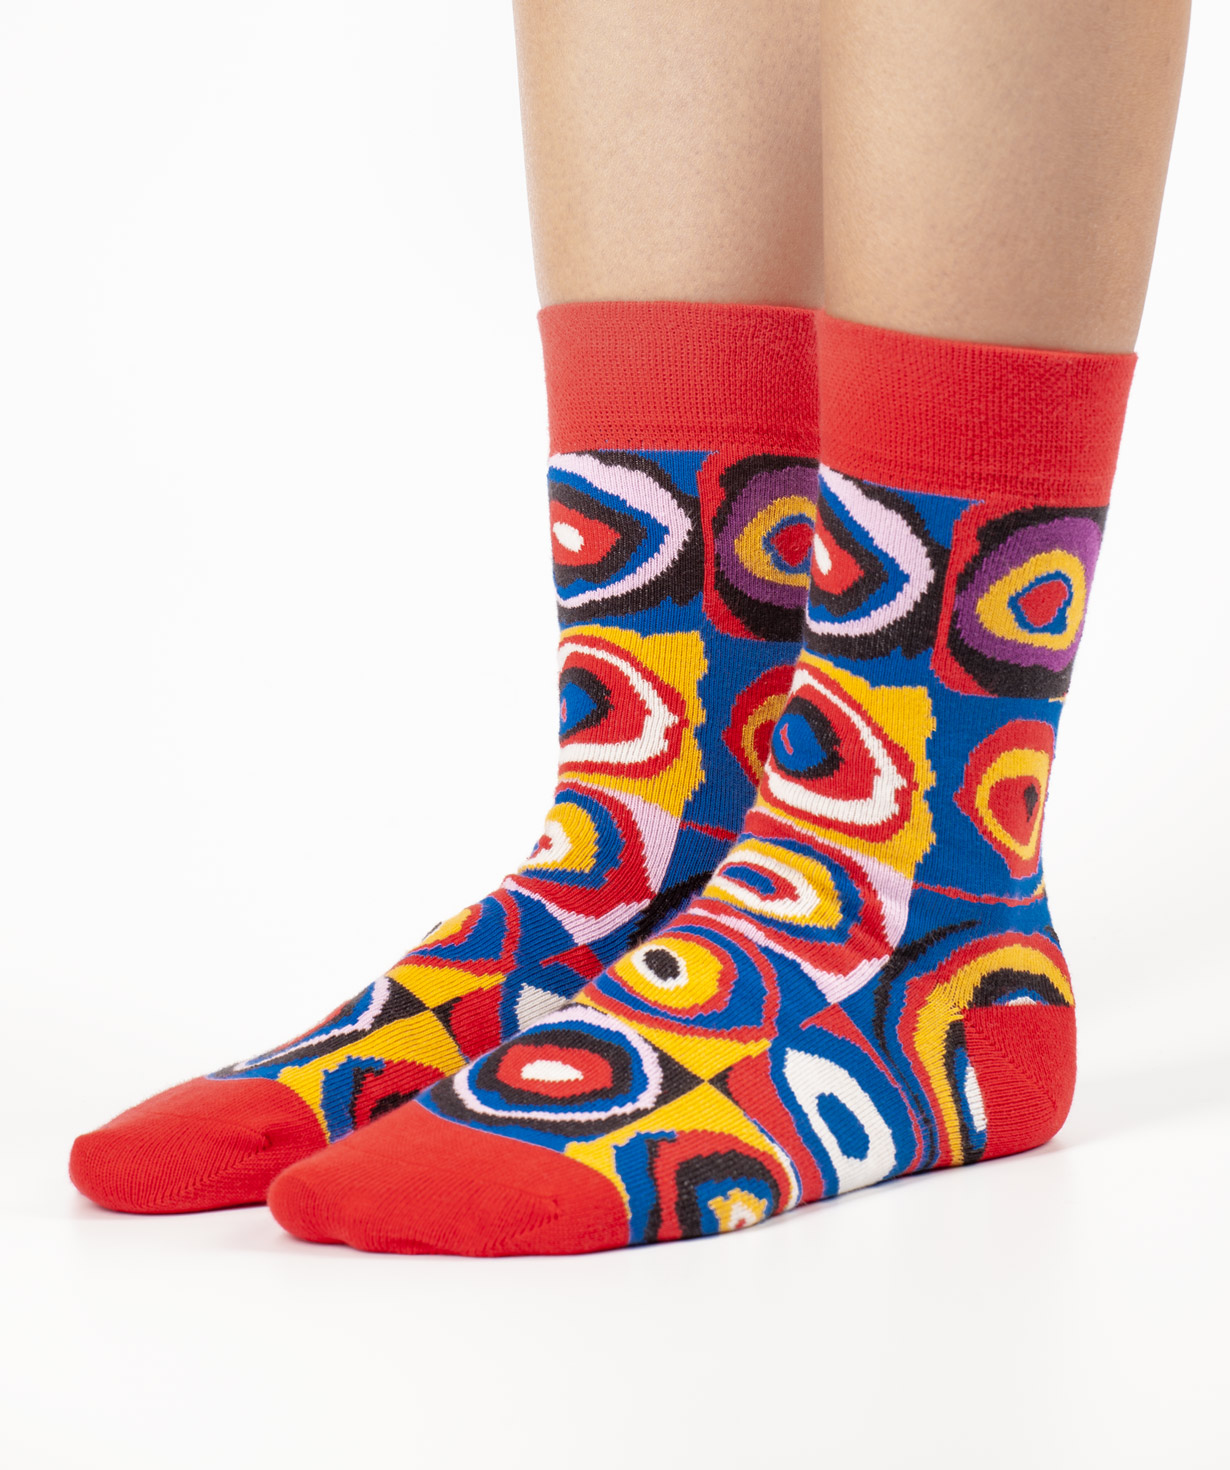 Socks  `Art socks` with `Farbstudie Quadrate` painting 1 pair